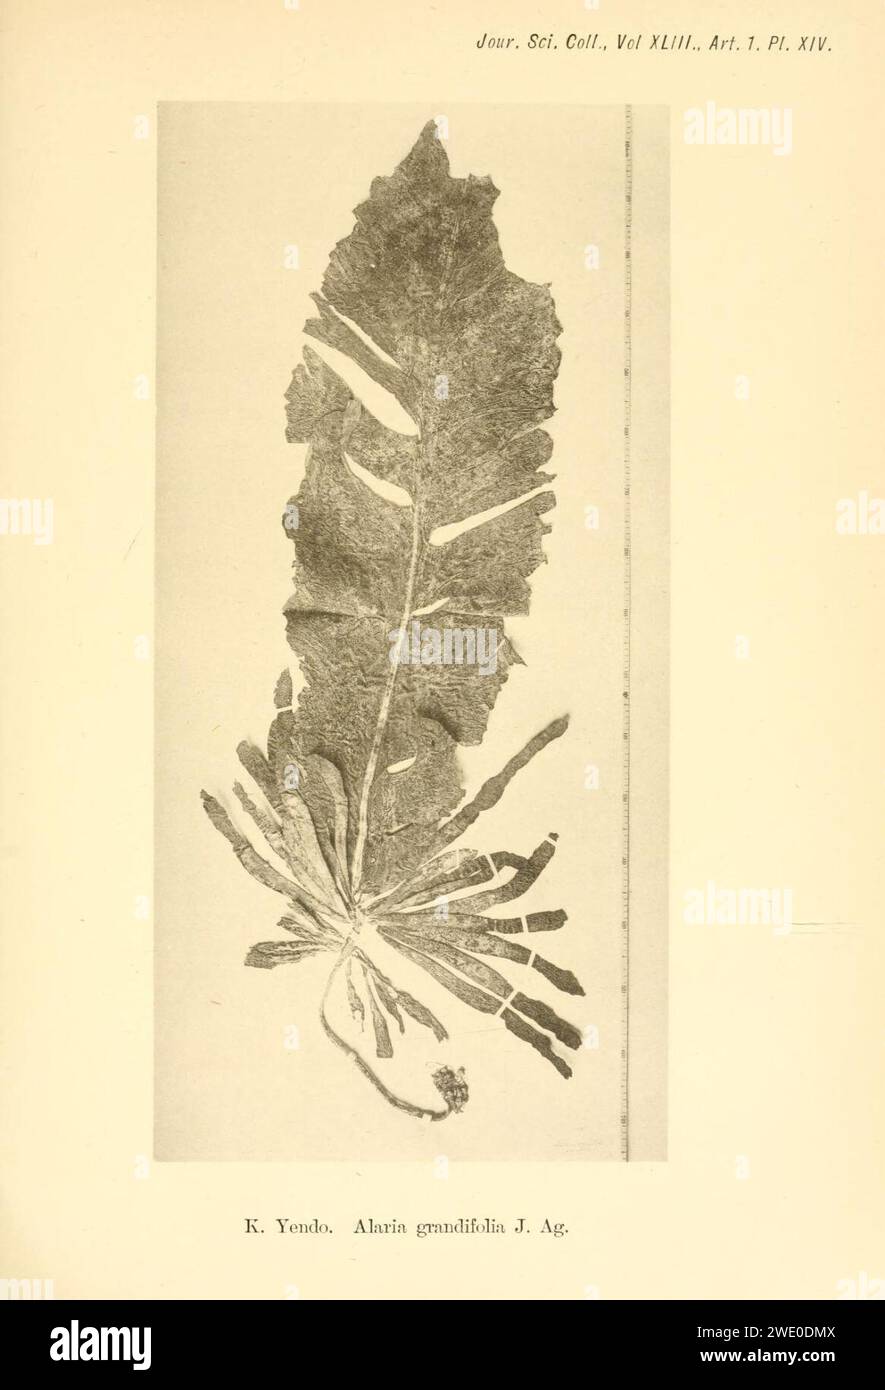 Alaria grandifolia (Alaria esculenta) in Yendo 1919, plate 14. Stock Photo